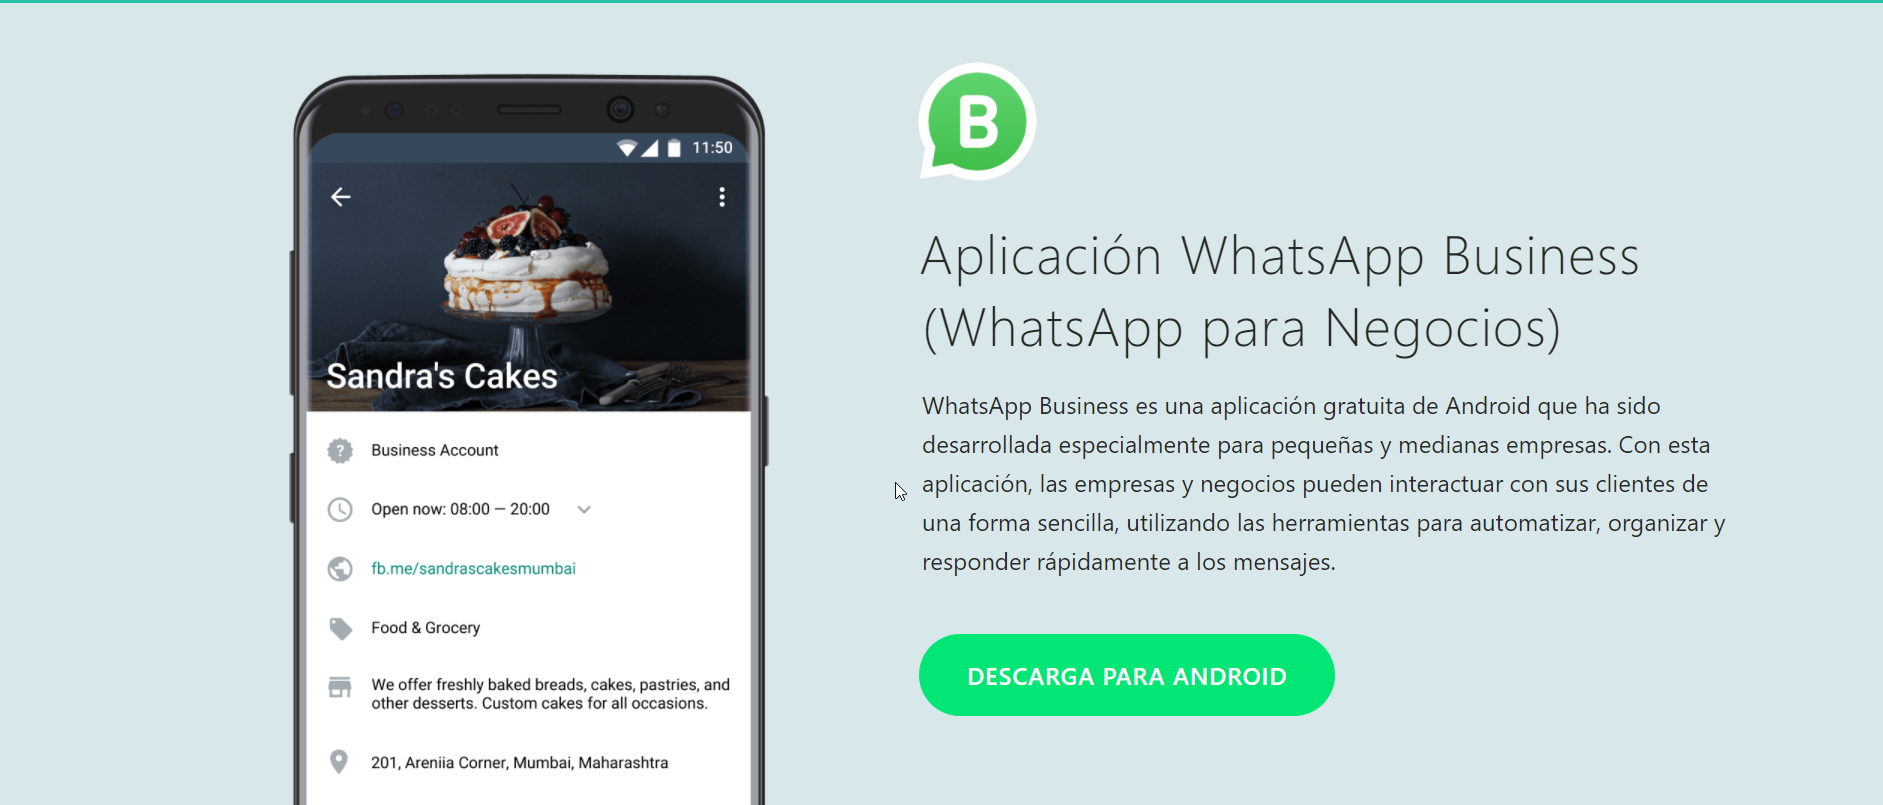 2018-01-24 10_11_06-Aplicación WhatsApp Business (WhatsApp para Negocios)